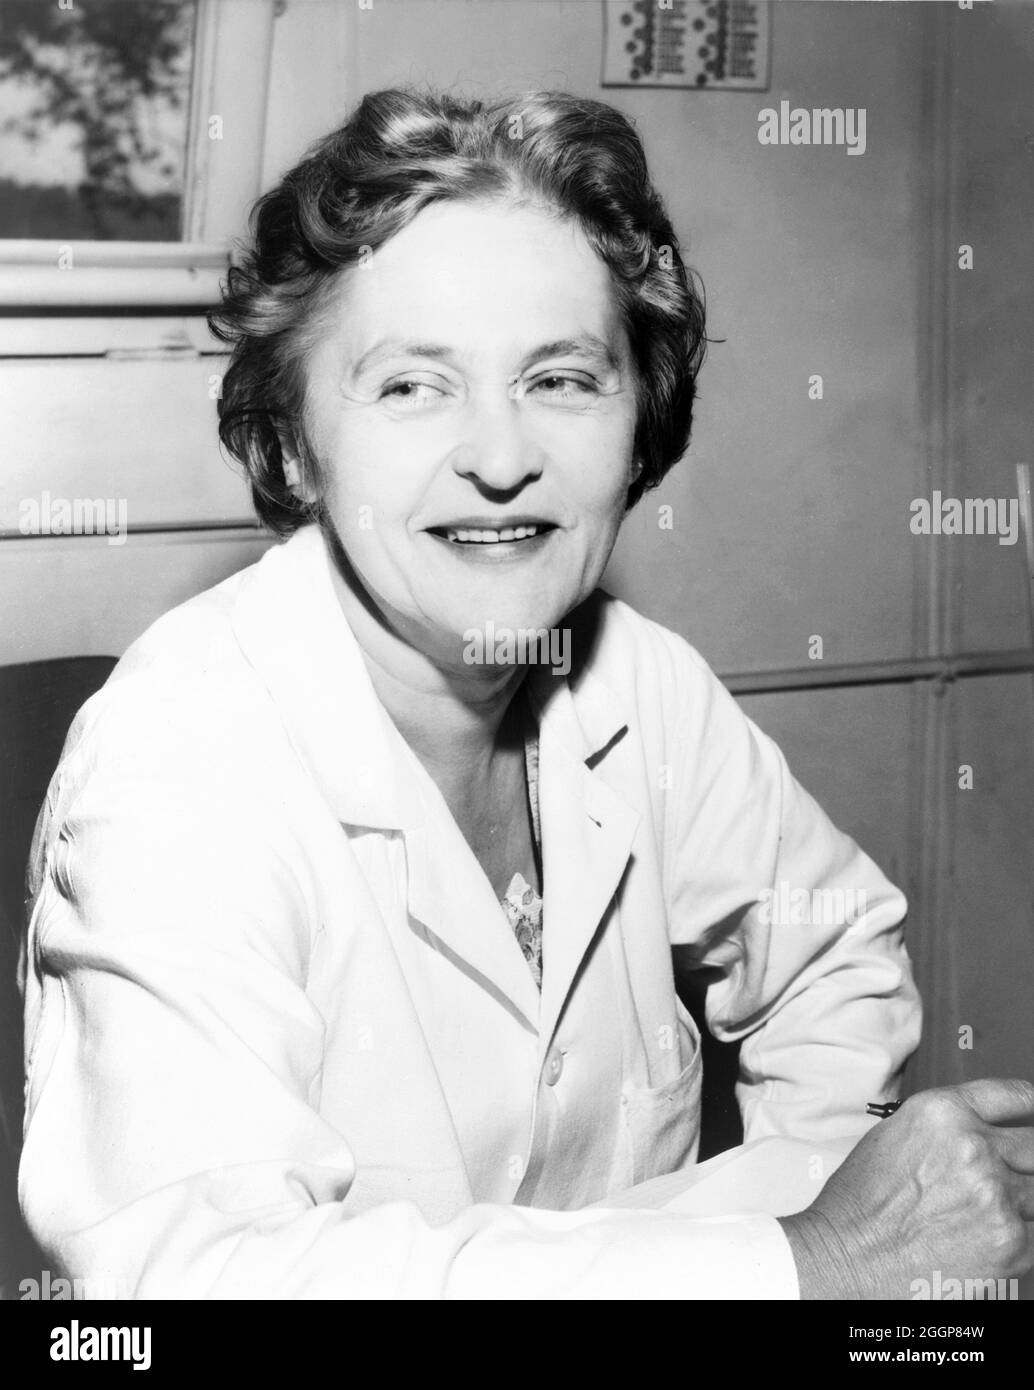 Ritratto di Maria Telkes (12 dicembre 1900 - 2 dicembre 1995), biofisica e innovatrice ungherese-americana nel campo dell'energia solare. Foto Stock